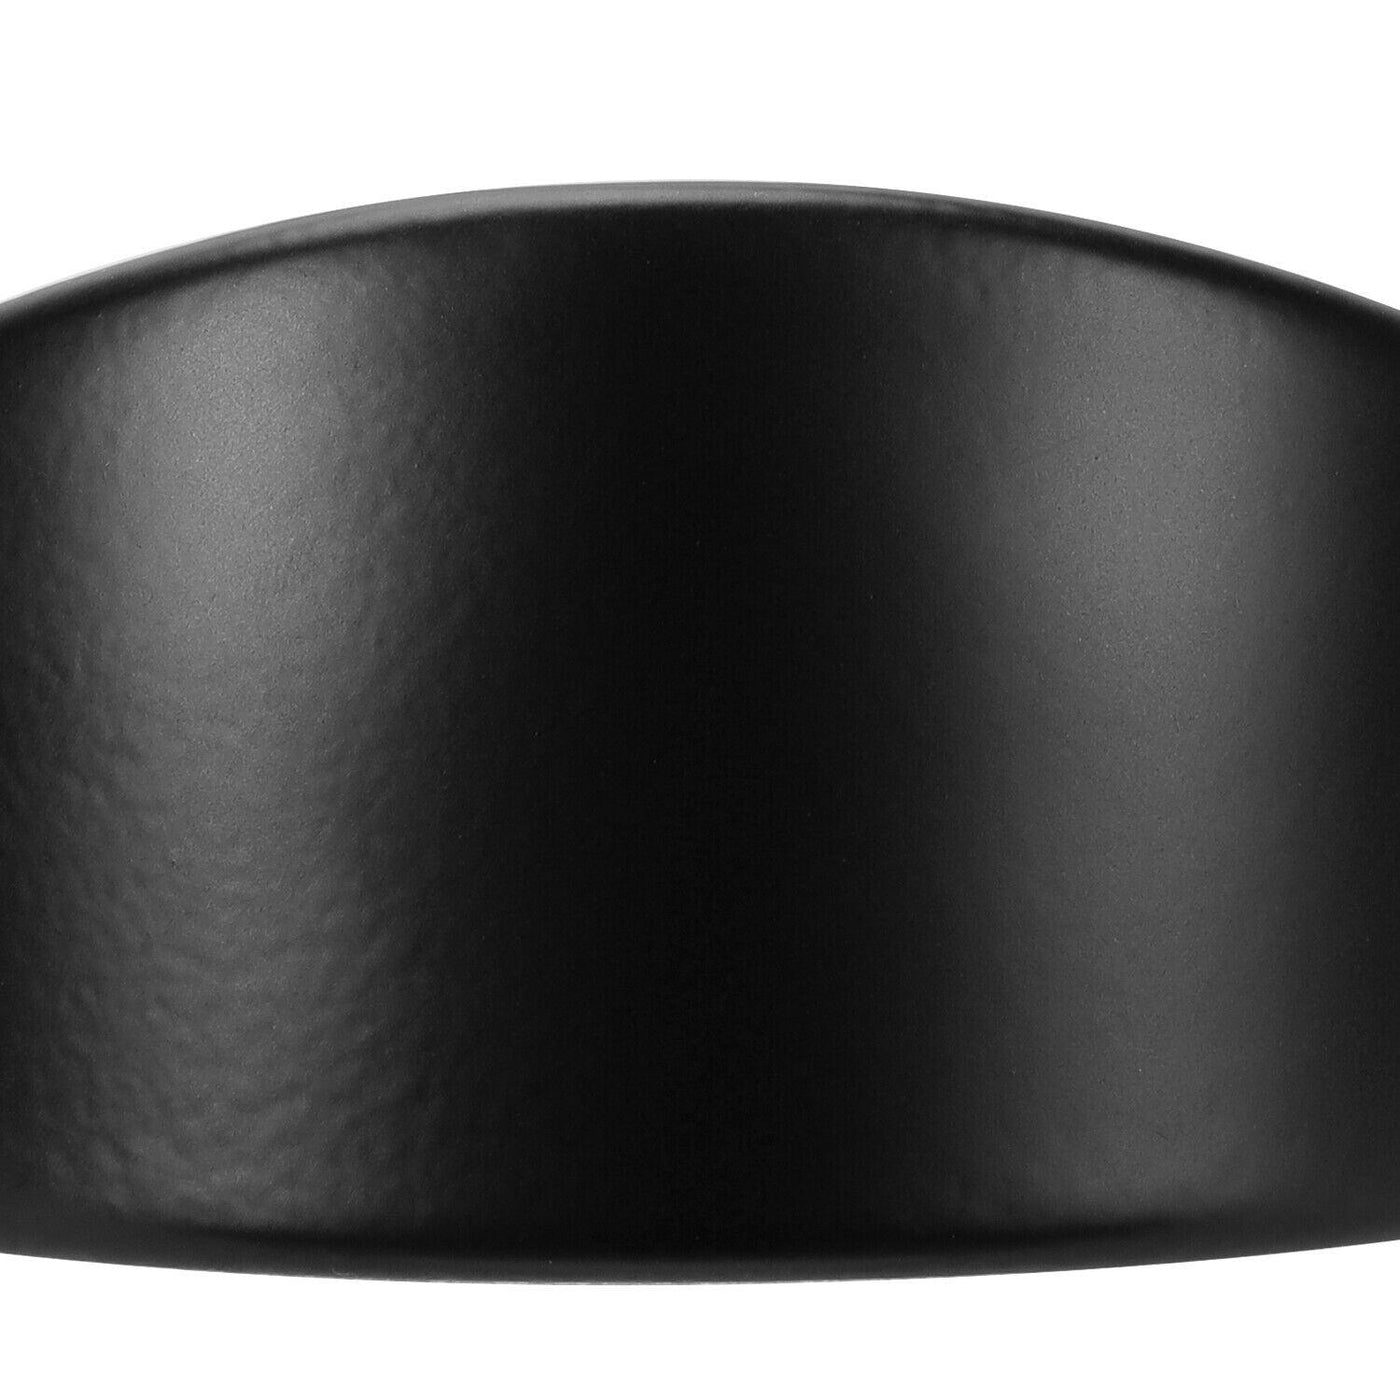 For Harley 7" Headlight 4.5" Passing Fog Lights Lamp Trim Ring Bezel Visor Cover - Moto Life Products